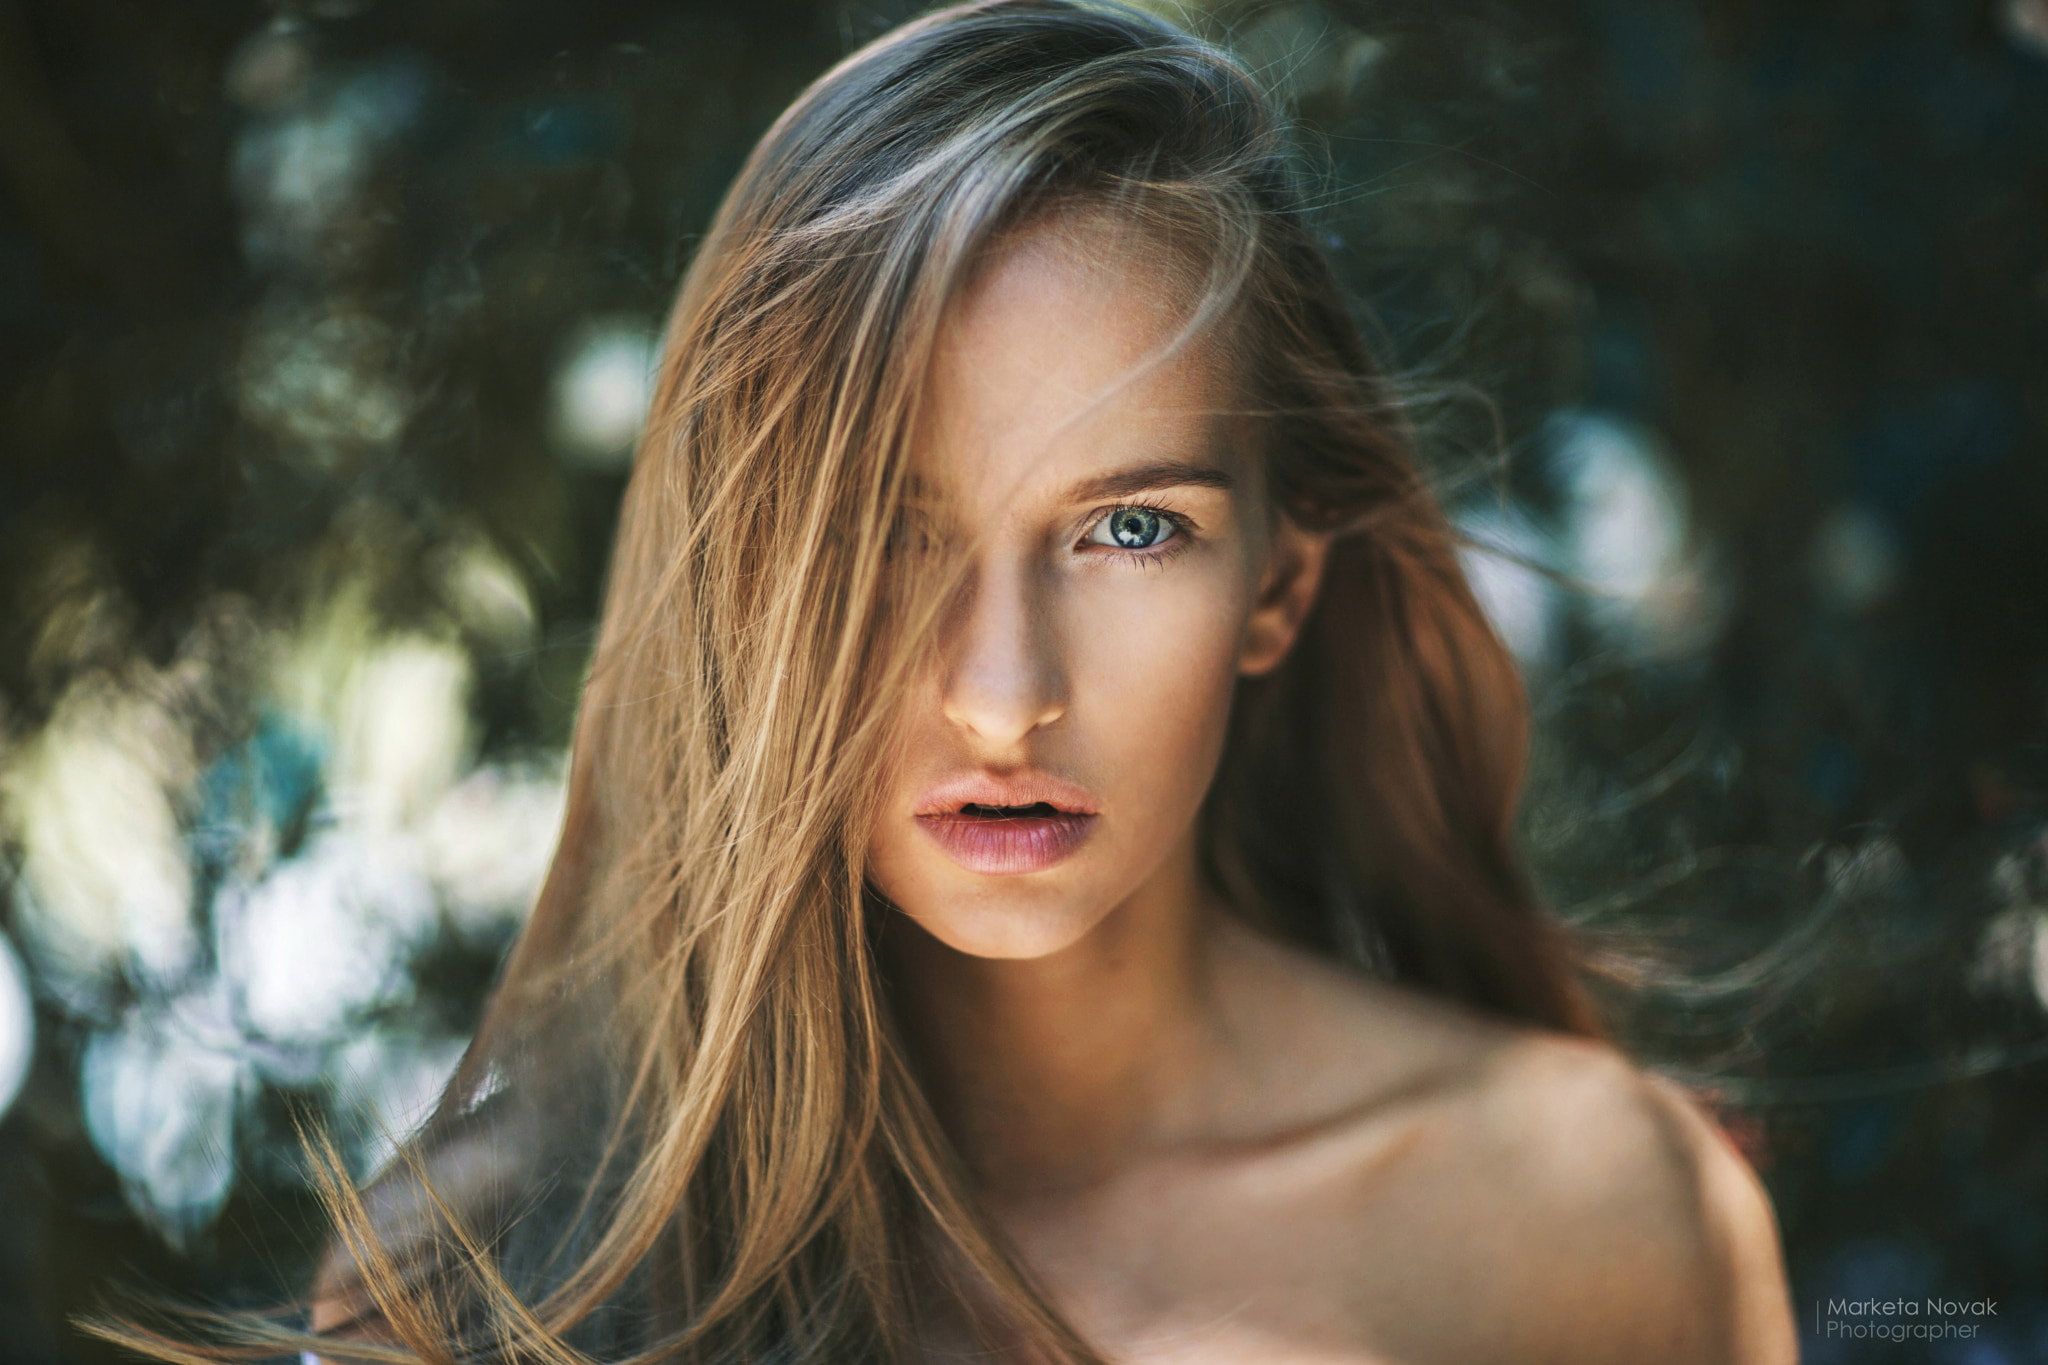 Marketa Novak, face, portrait, women, model